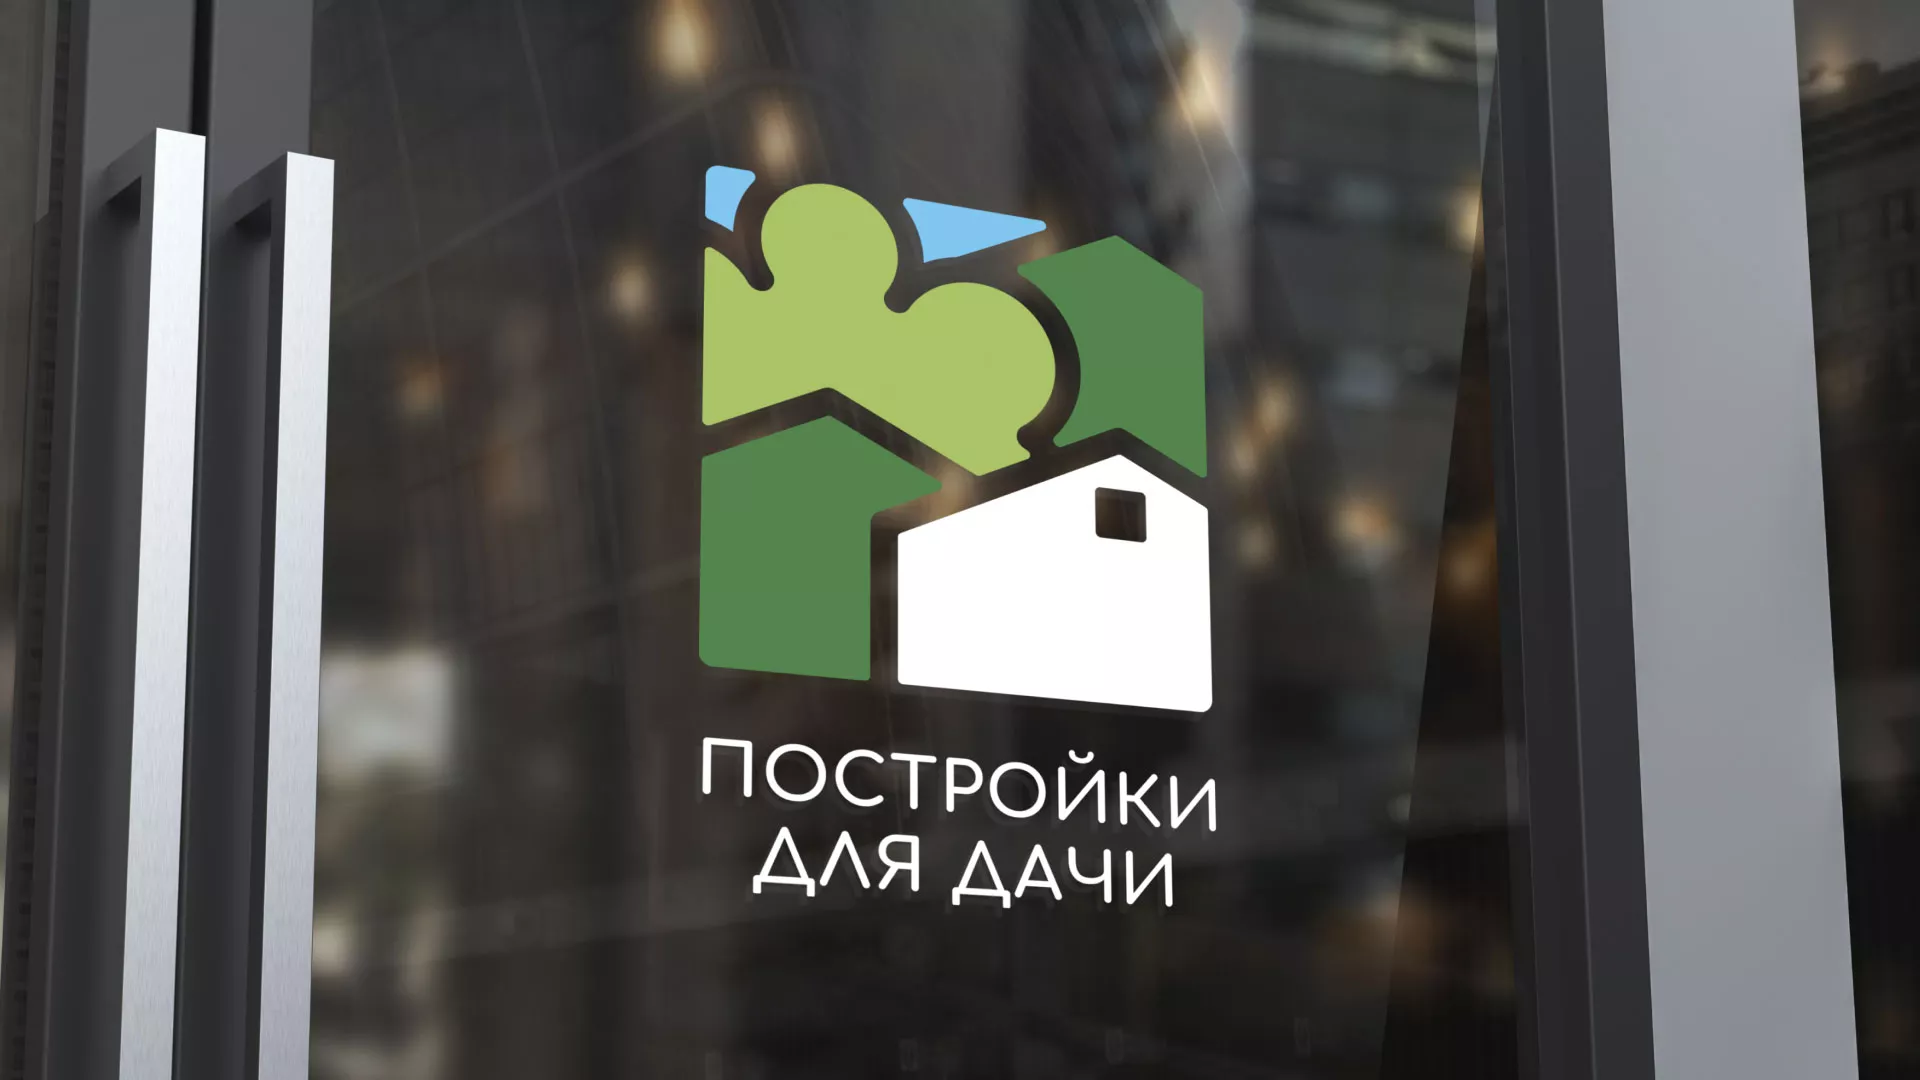 Разработка логотипа в Людиново для компании «Постройки для дачи»